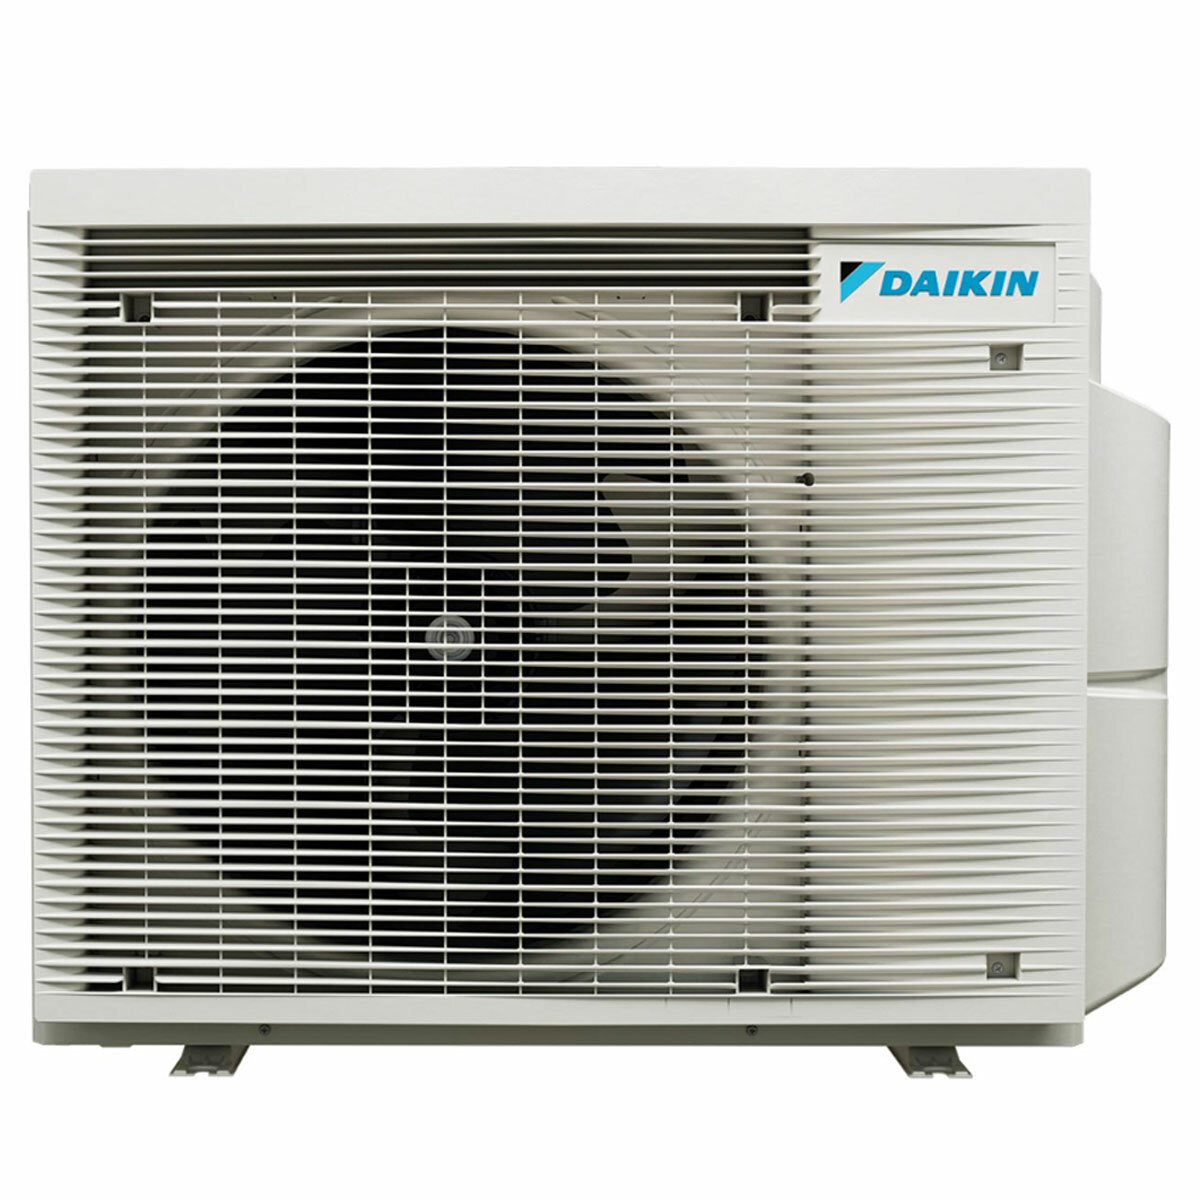 Daikin Emura 3 trial split air conditioner 9000+12000+18000 BTU inverter A+ wifi outdoor unit 7.8 kW Black